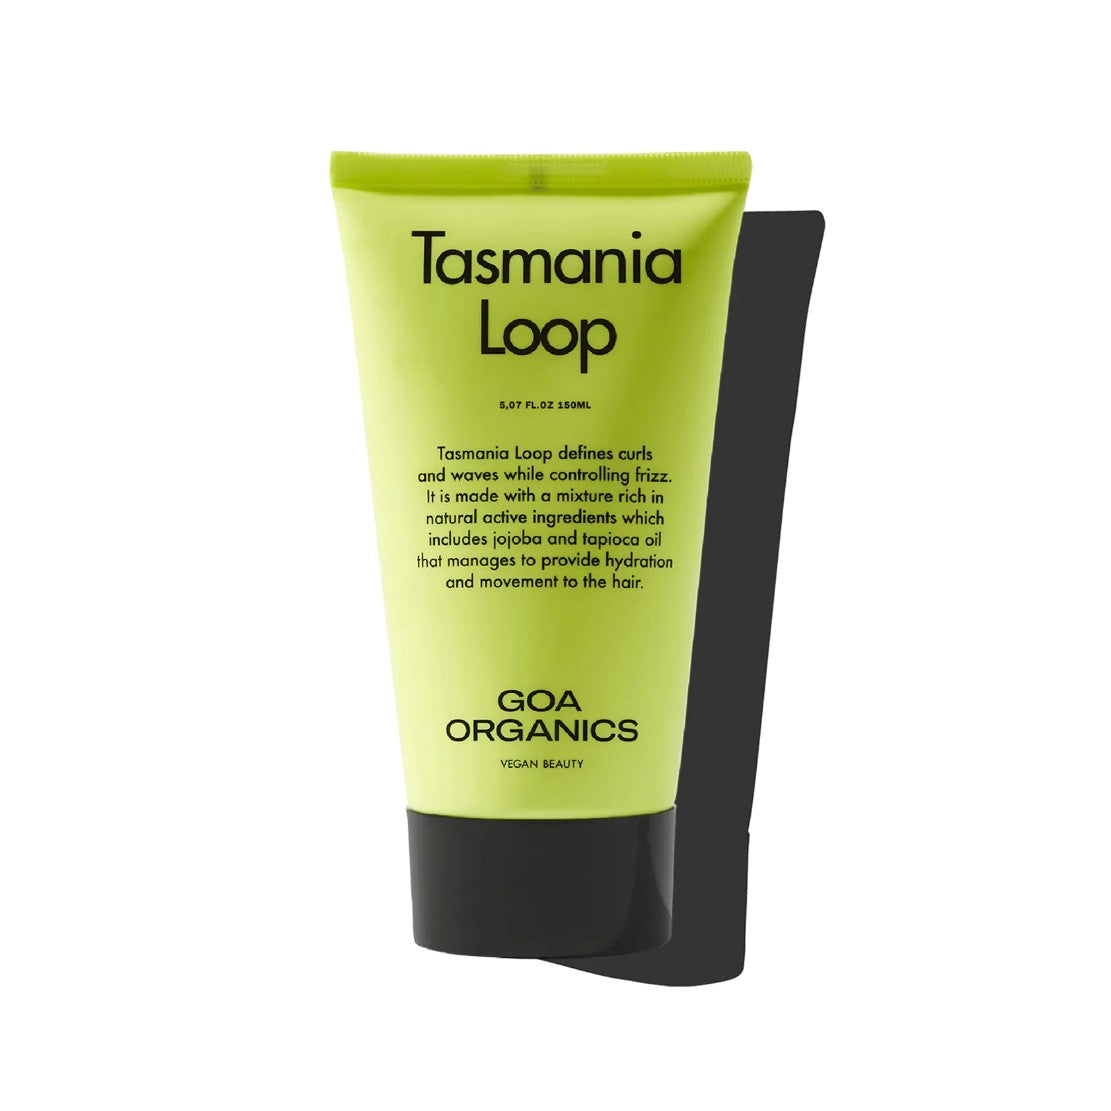 Tasmania Loop